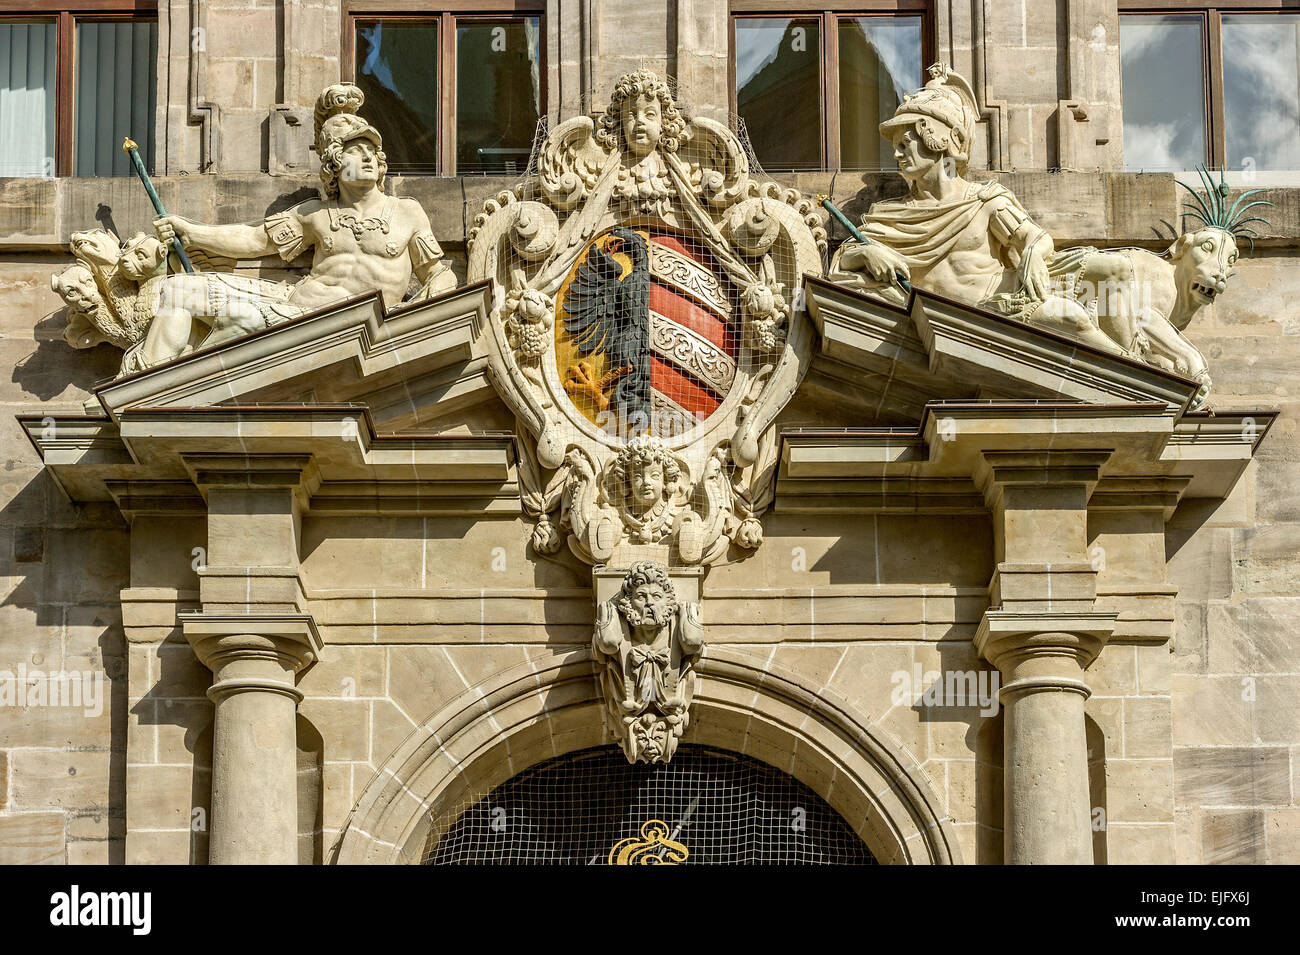 Les petites armoiries de la ville de Nuremberg et de figures allégoriques sur le fronton du portail de droite, l'Ancien hôtel de ville Banque D'Images